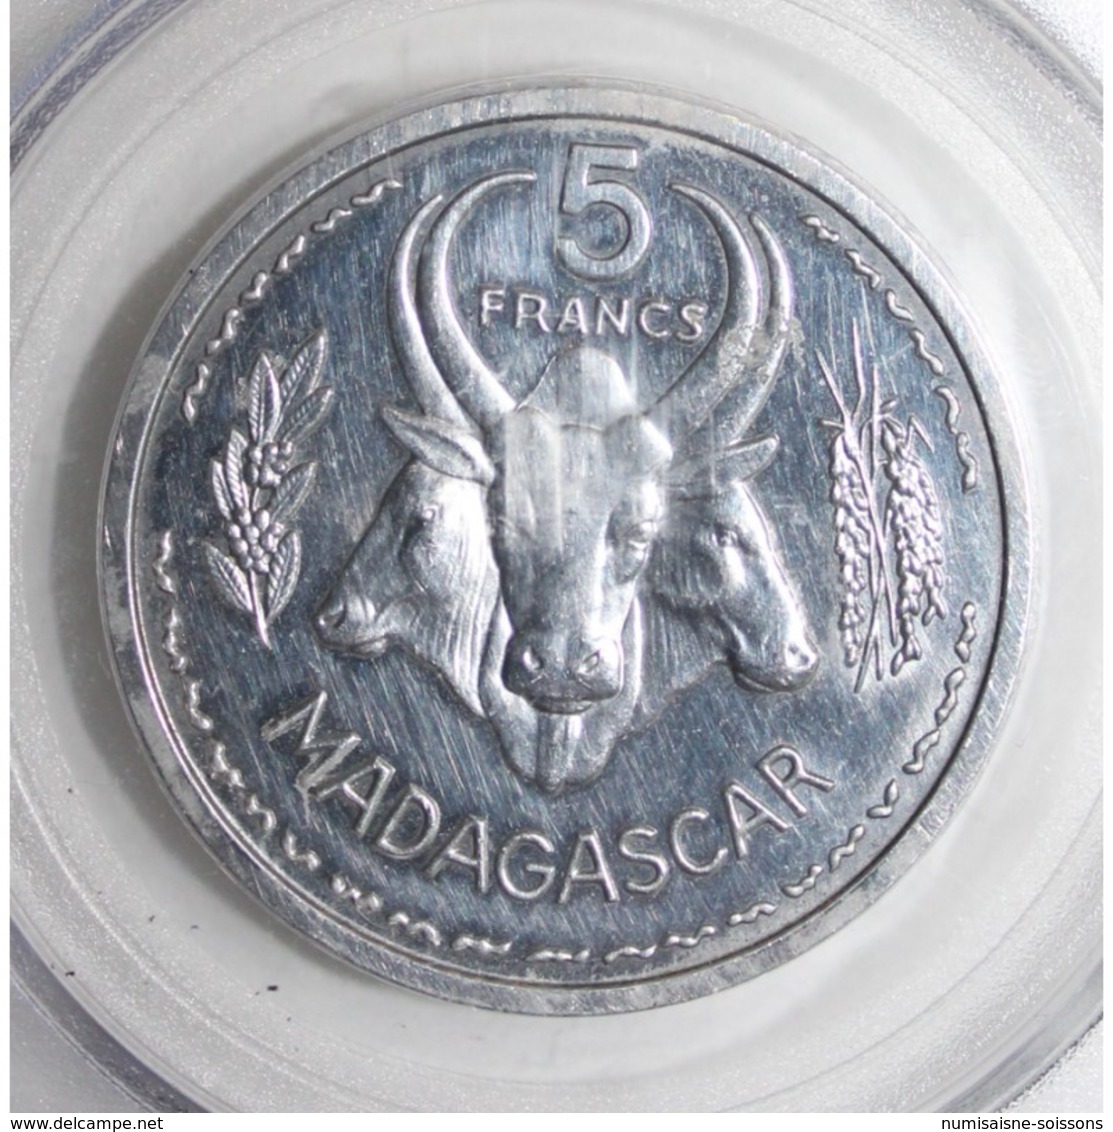 MADAGASCAR - KM PE3 - 5 FRANC 1953 - PIEFORT ESSAI - 104 Ex. - PCGS GENUINE - SPL - Madagascar